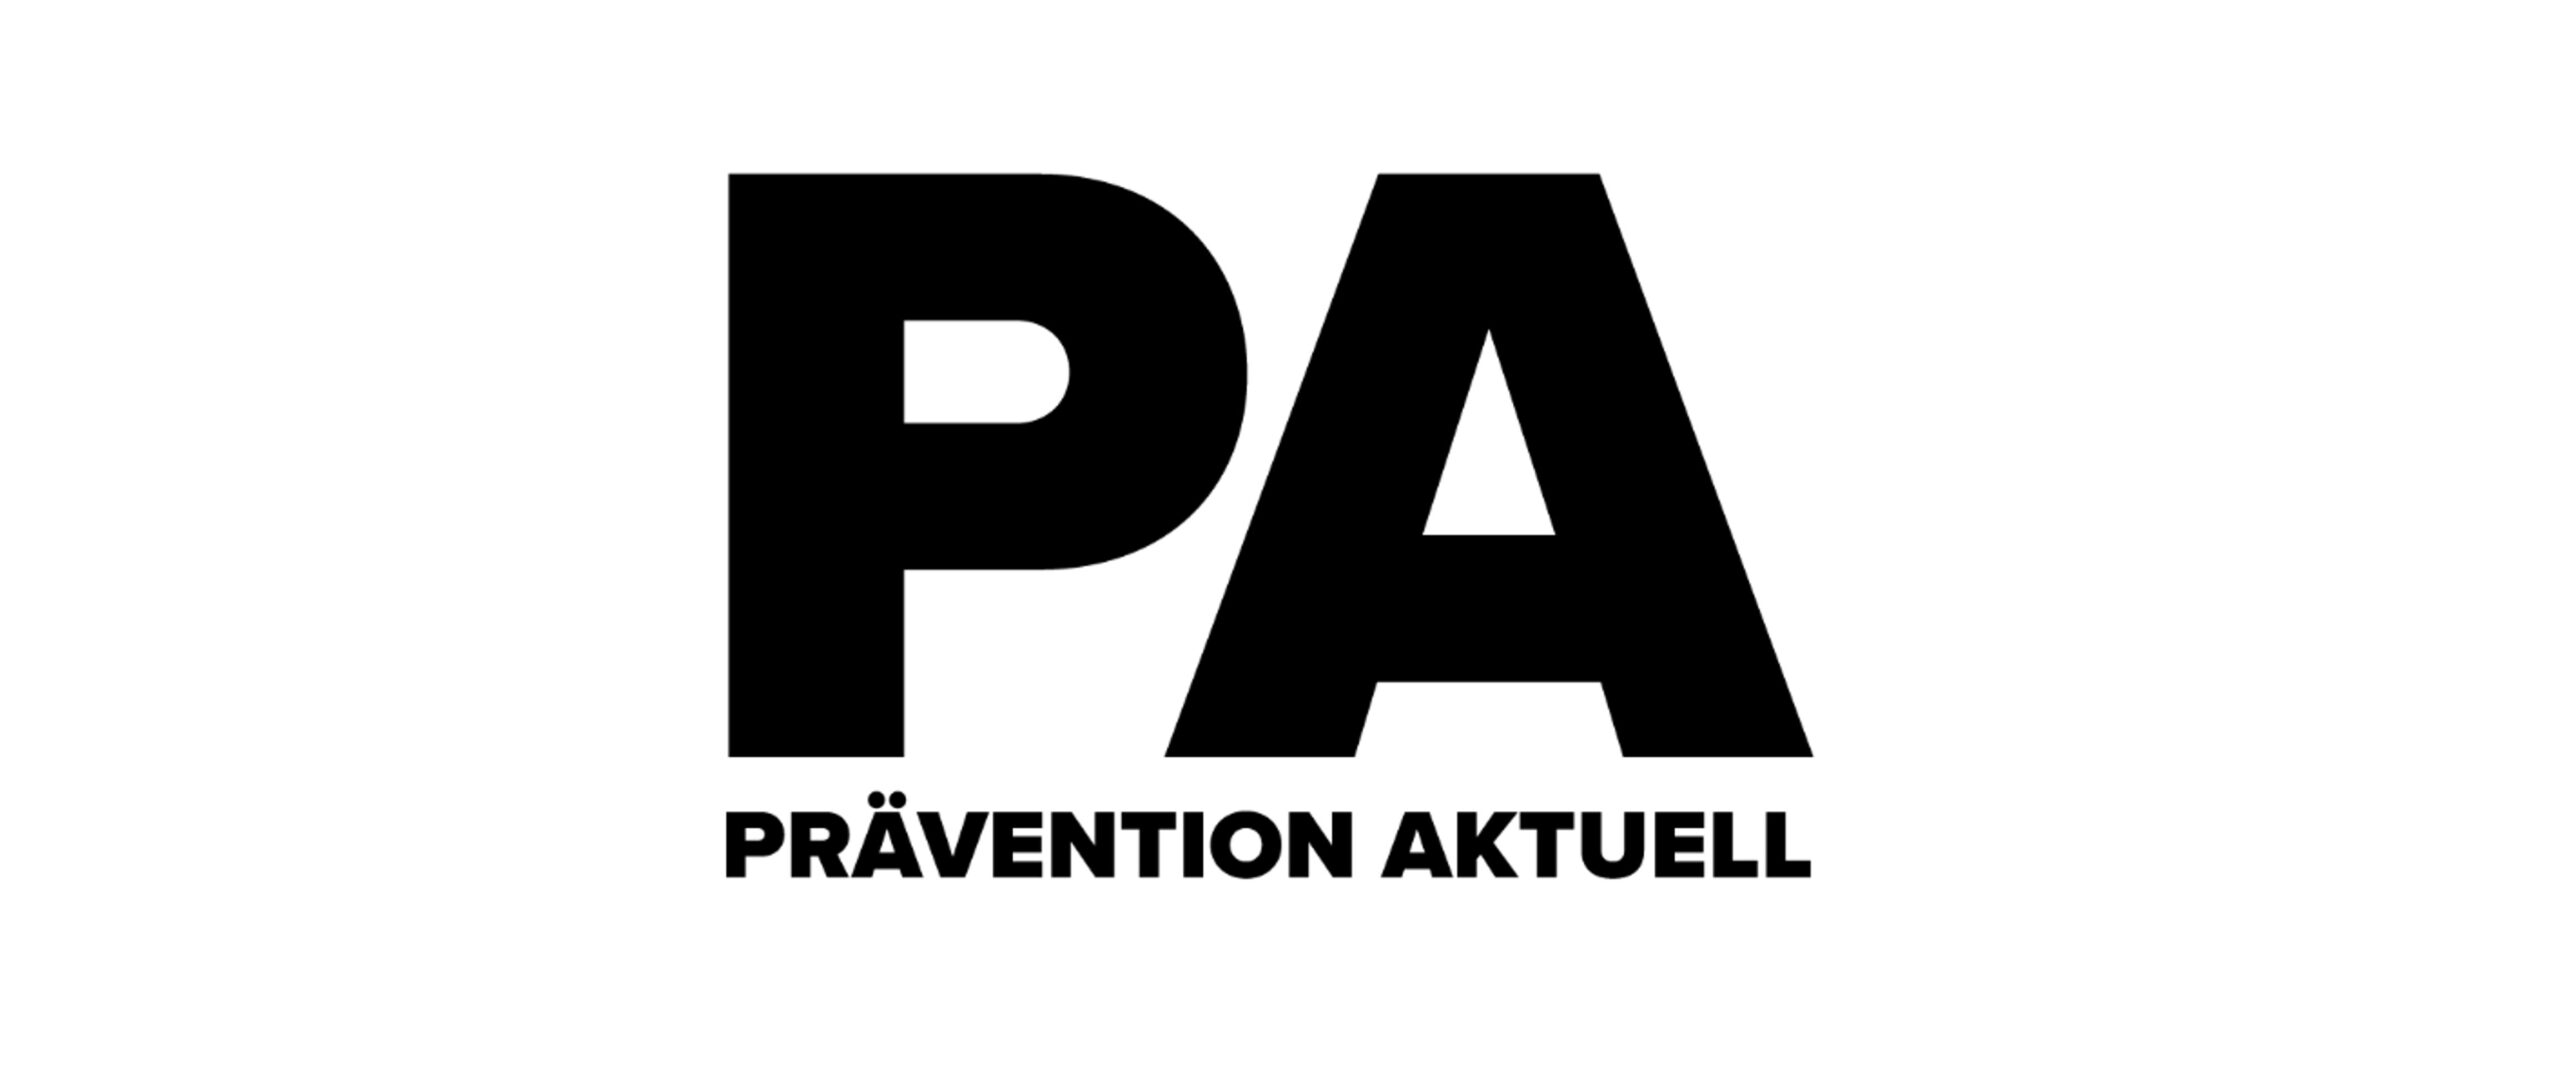 Logo von jetzt.de